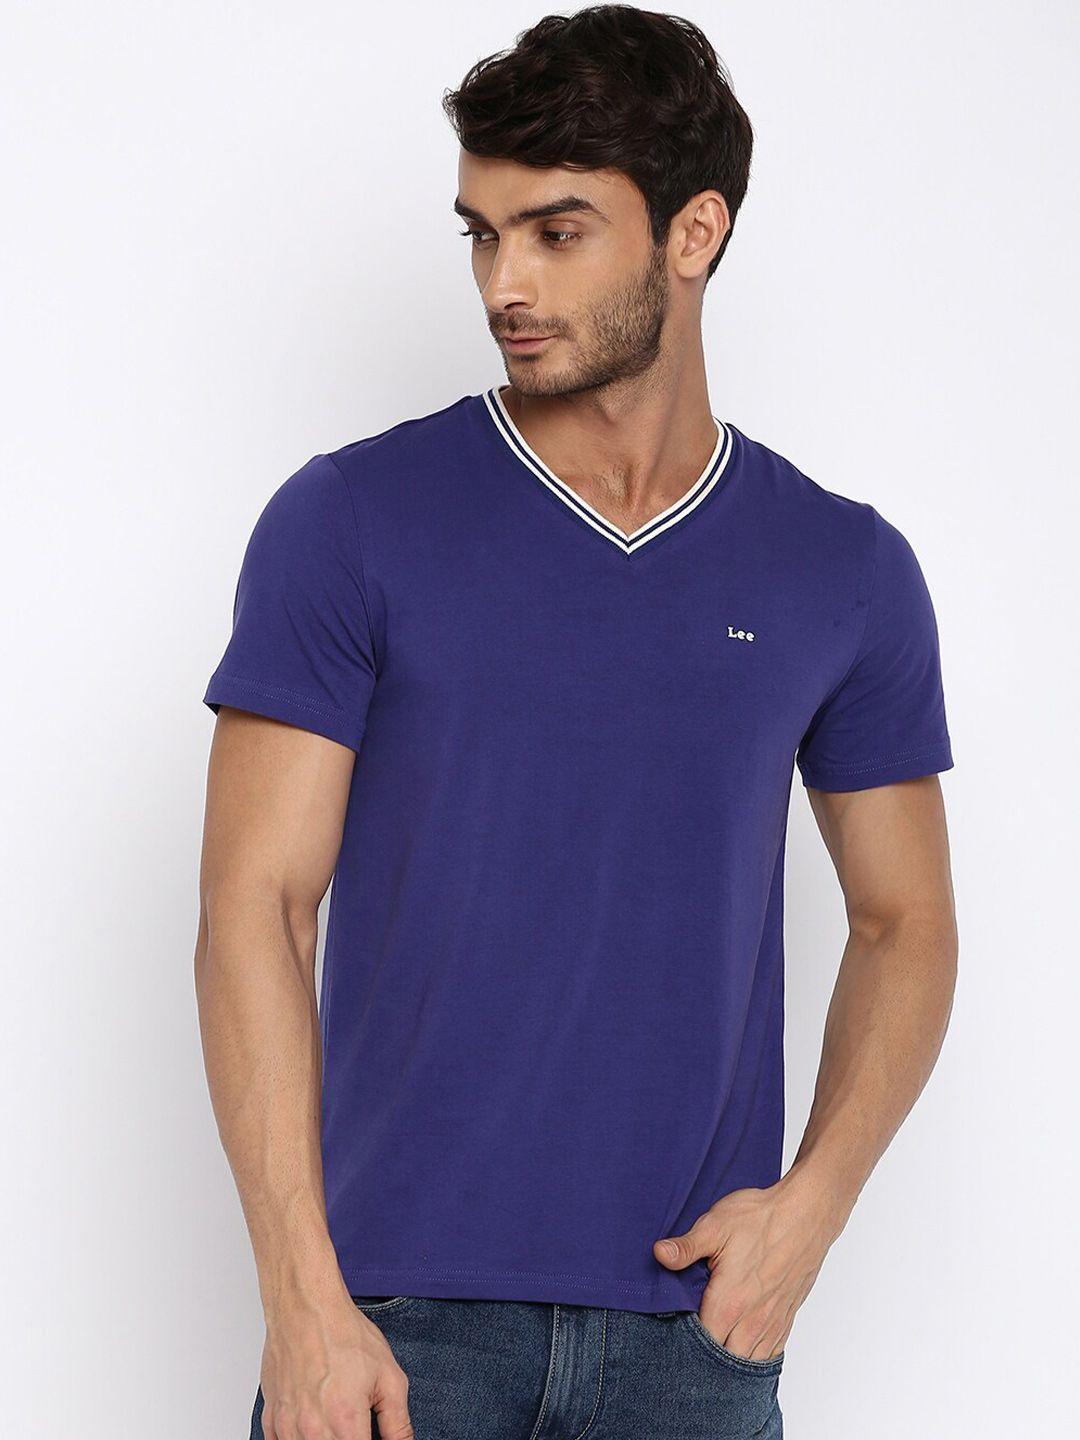 lee-men-navy-blue-v-neck-slim-fit-t-shirt